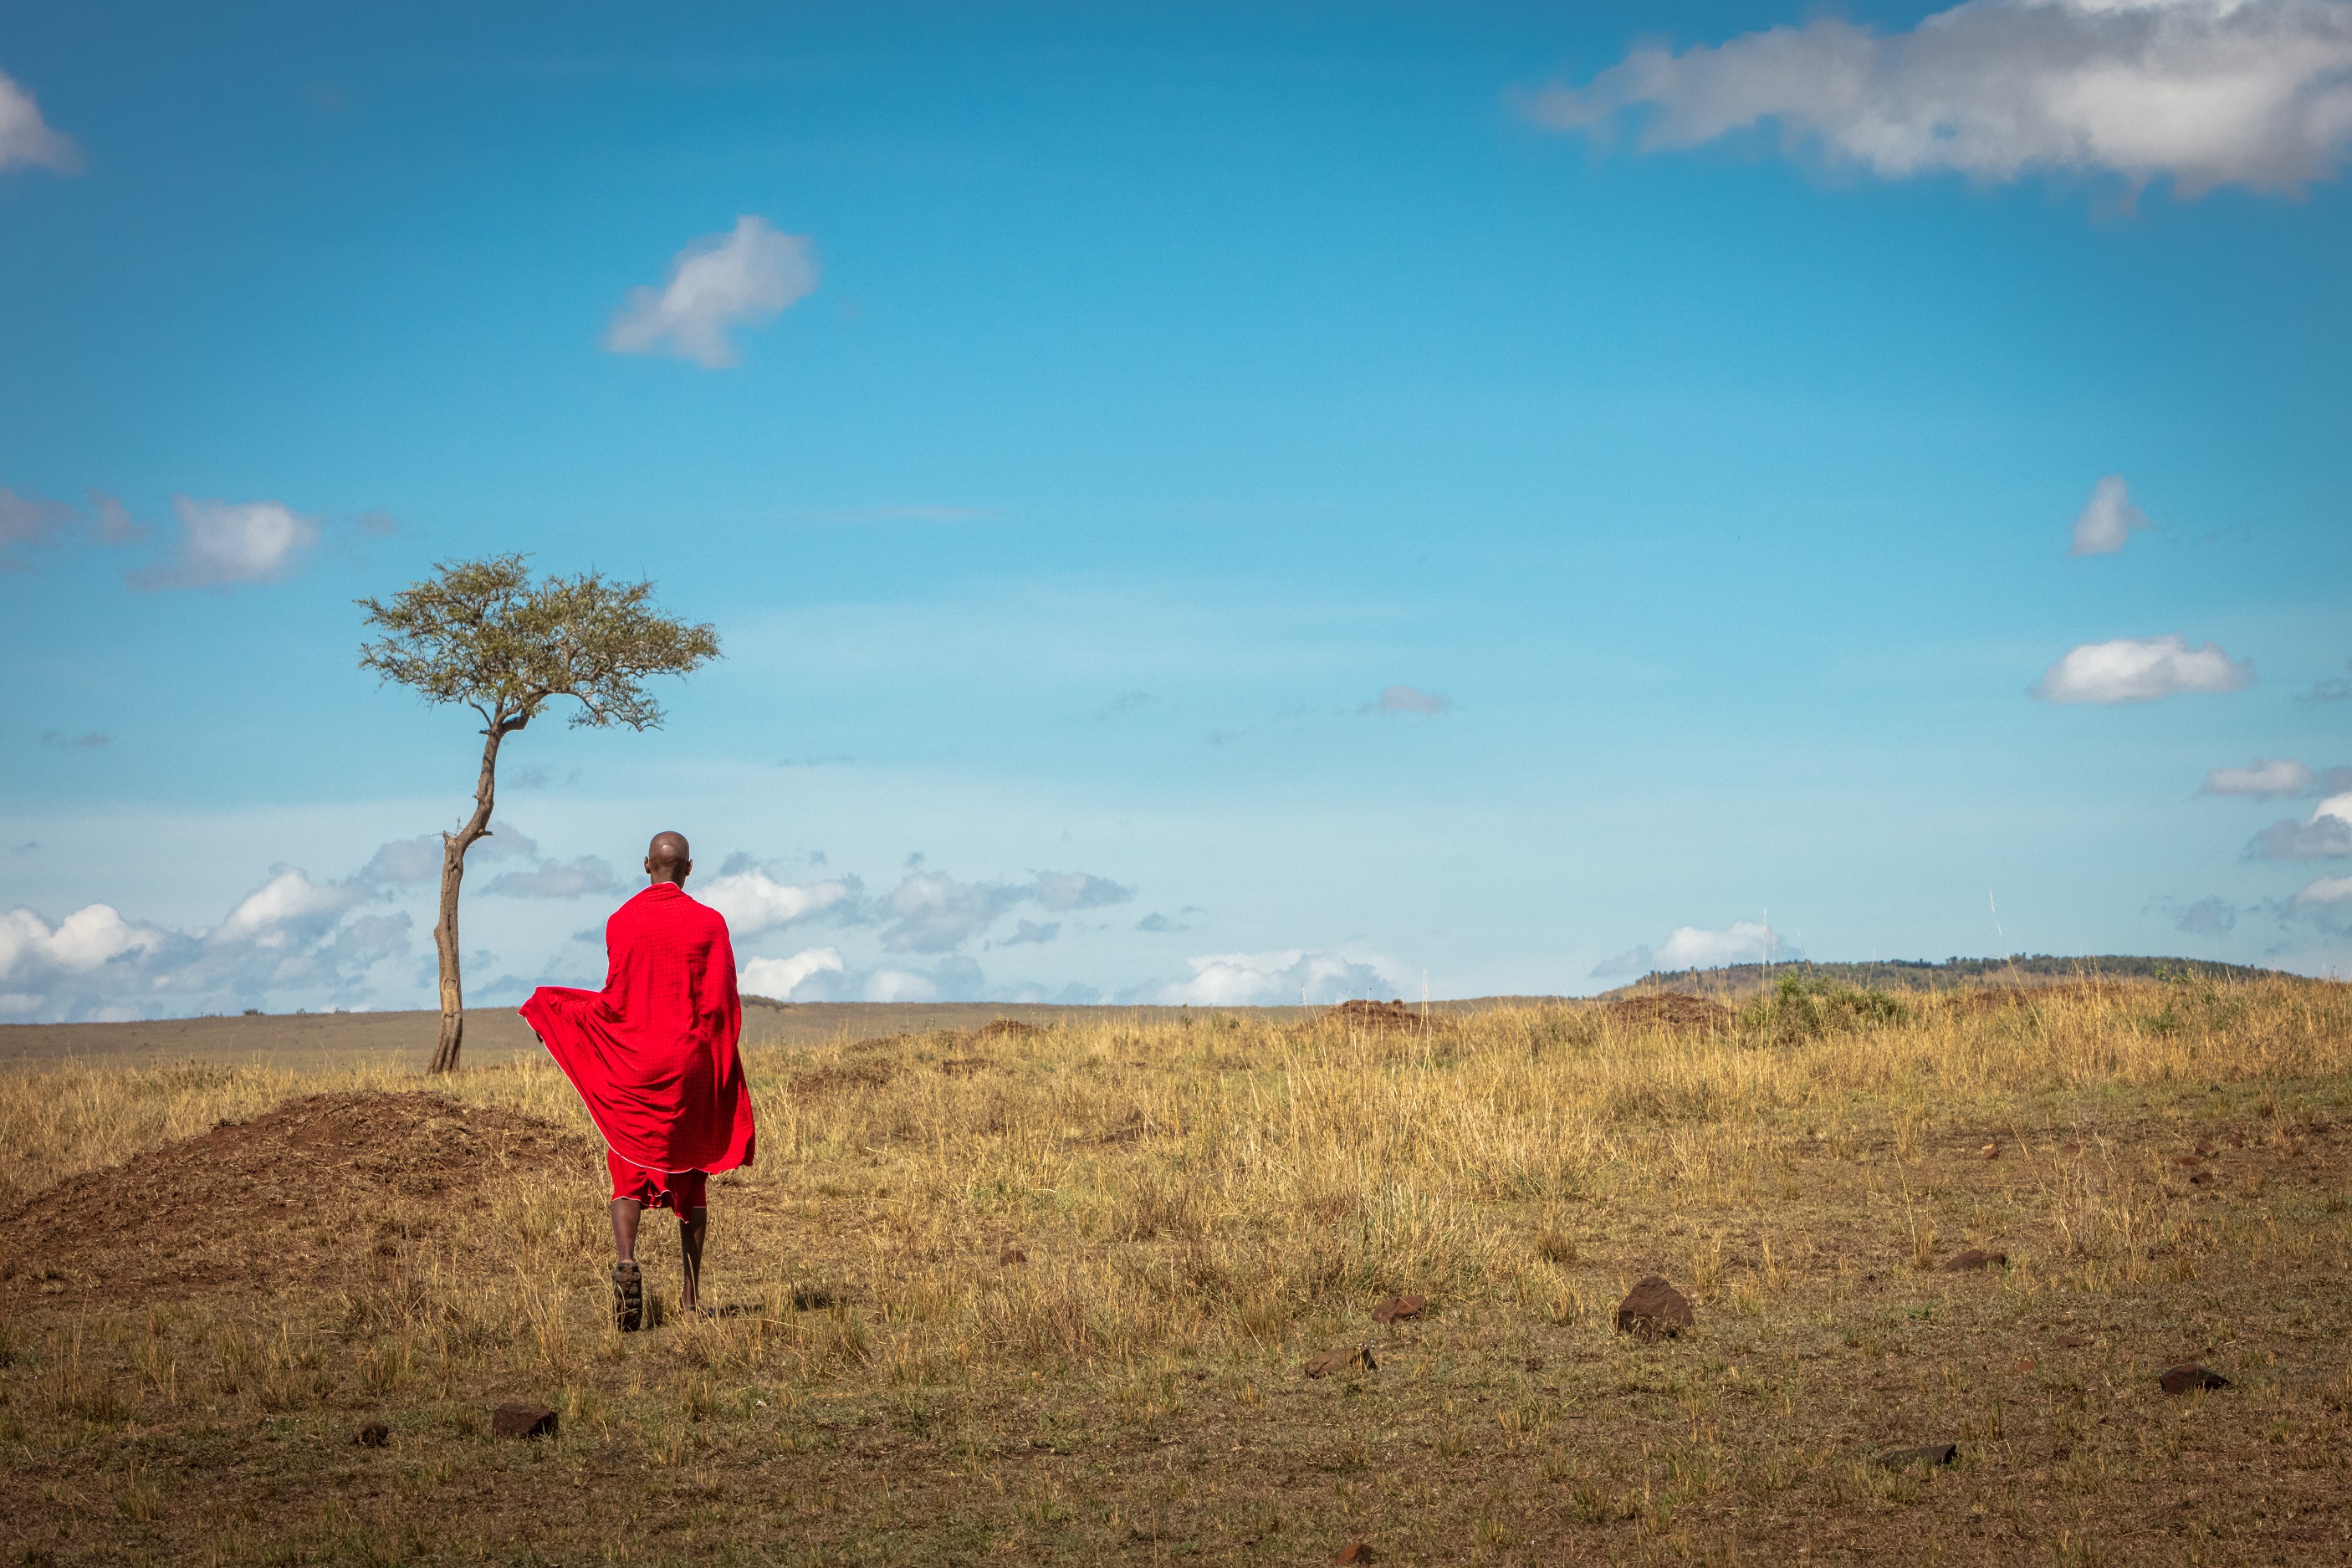 maasai-tribe-man-walking-away-in-kenya-africa_314559507.jpeg